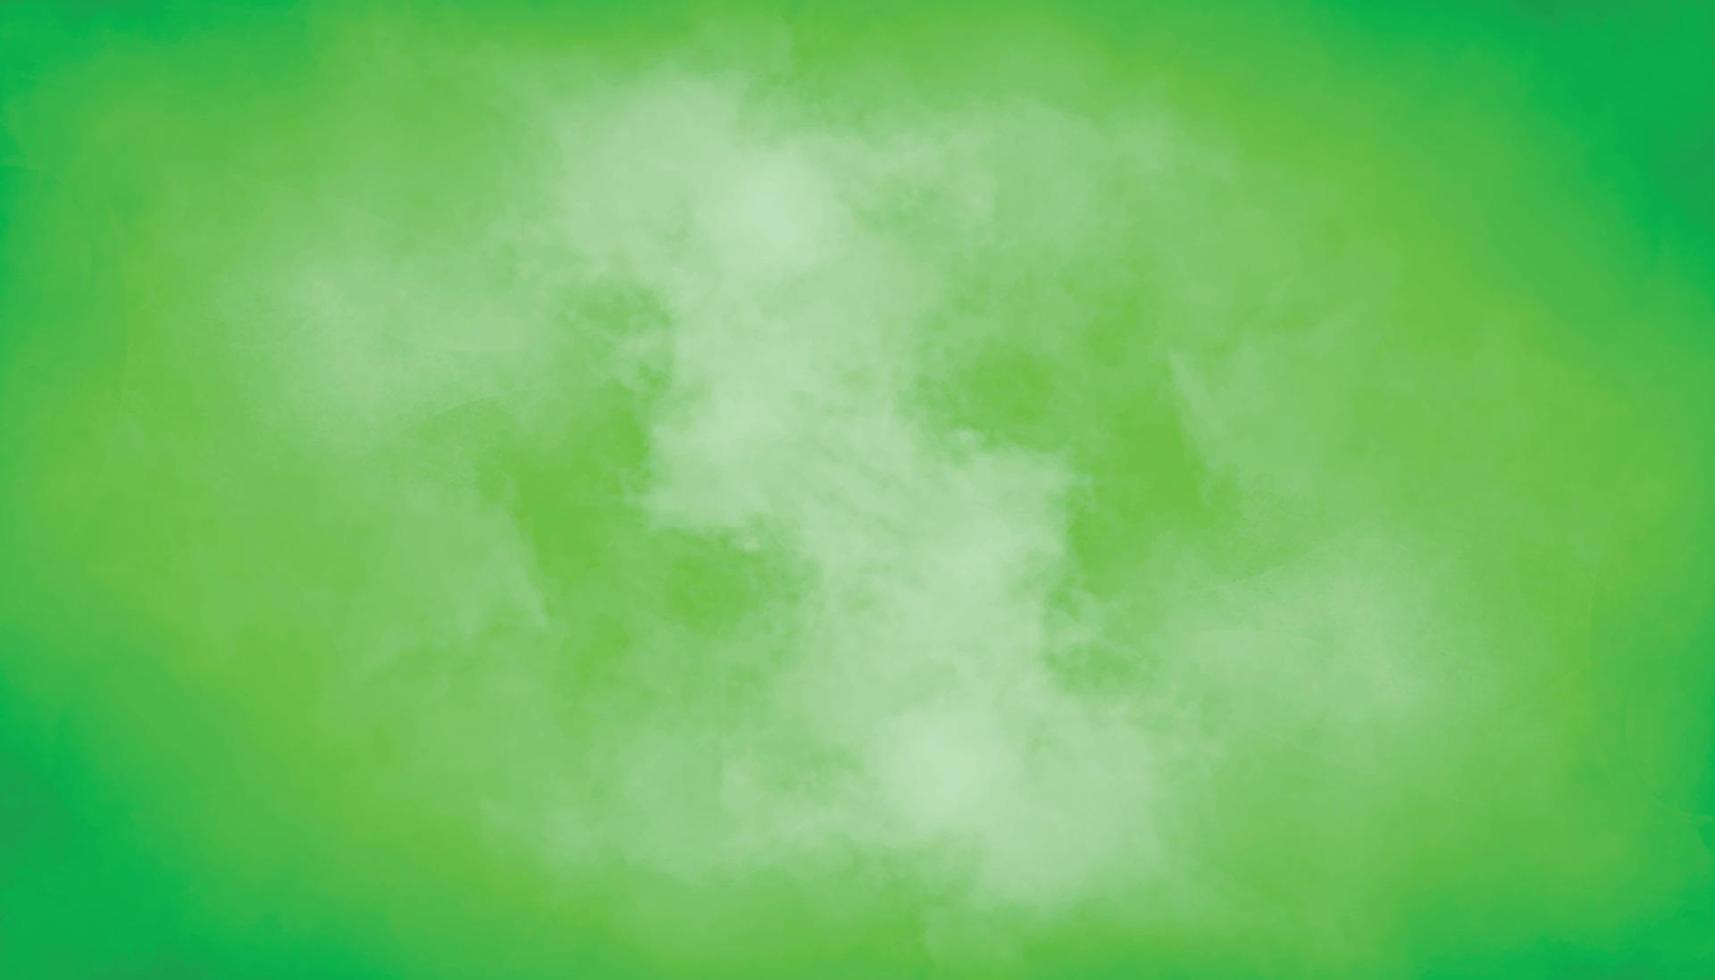 abstrakte Aquarellfarbe Hintergrund. schönes grünes Aquarell-Splash-Design. bunte einfache grüntöne aquarellbeschaffenheiten. Aquarell-Leinwand mit Papierstruktur für modernes kreatives Design. vektor